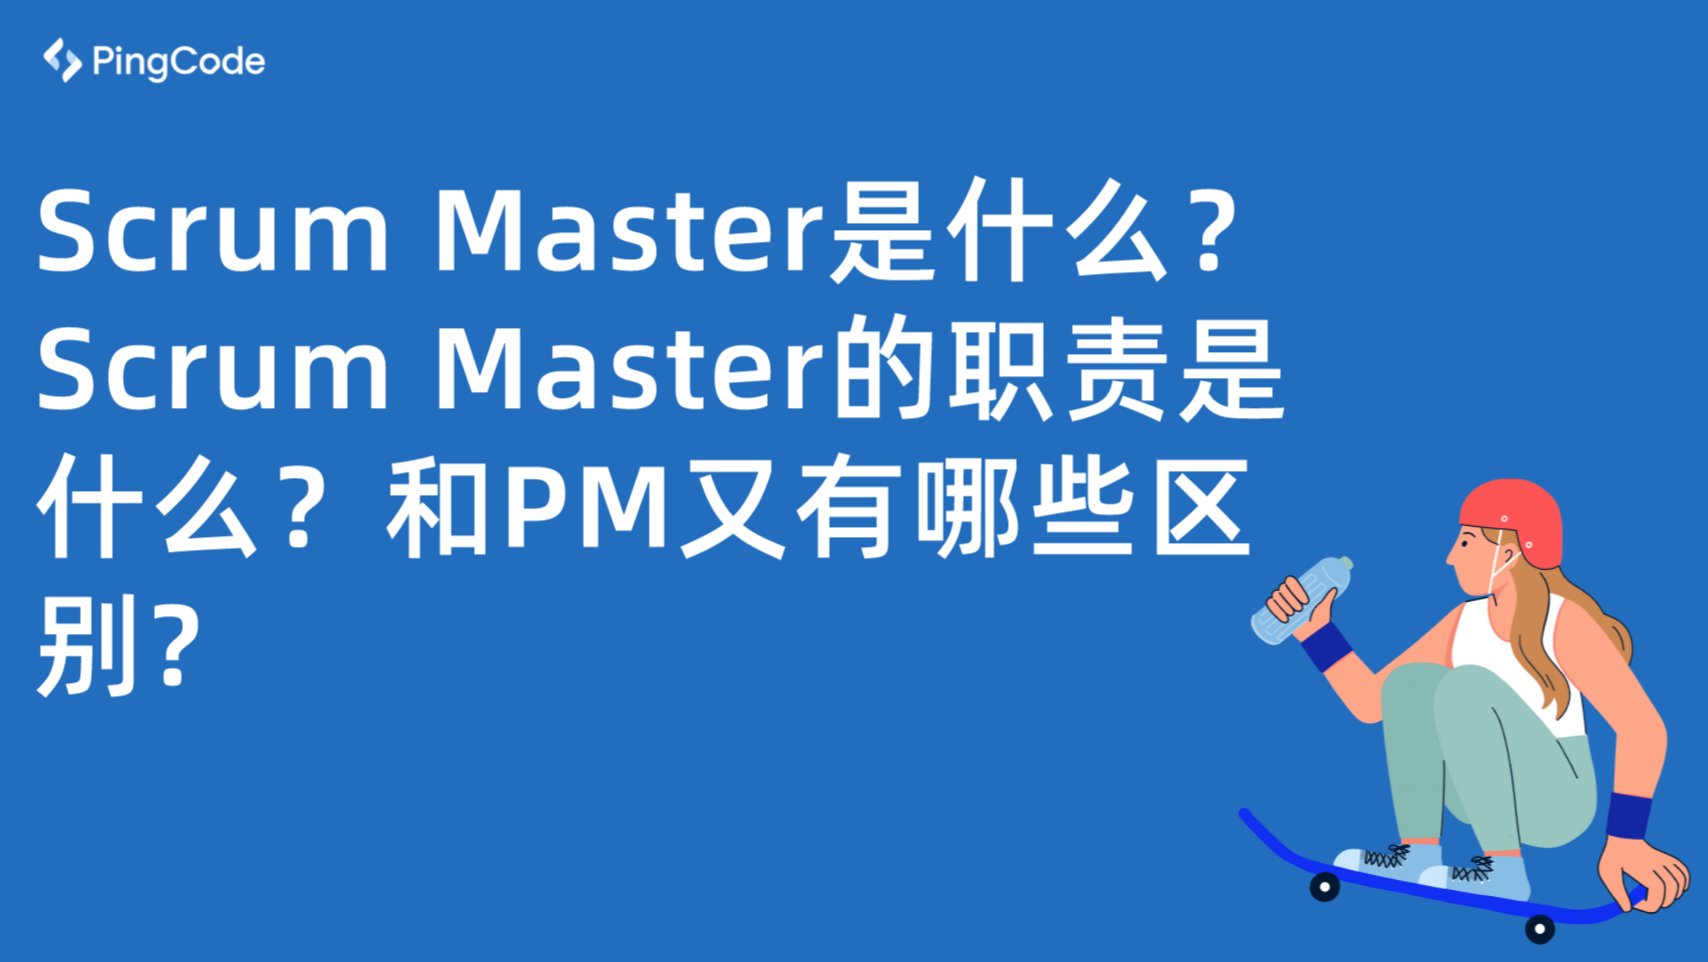 Scrum Master是什么？Scrum Master的职责是什么？和PM又有哪些区别?